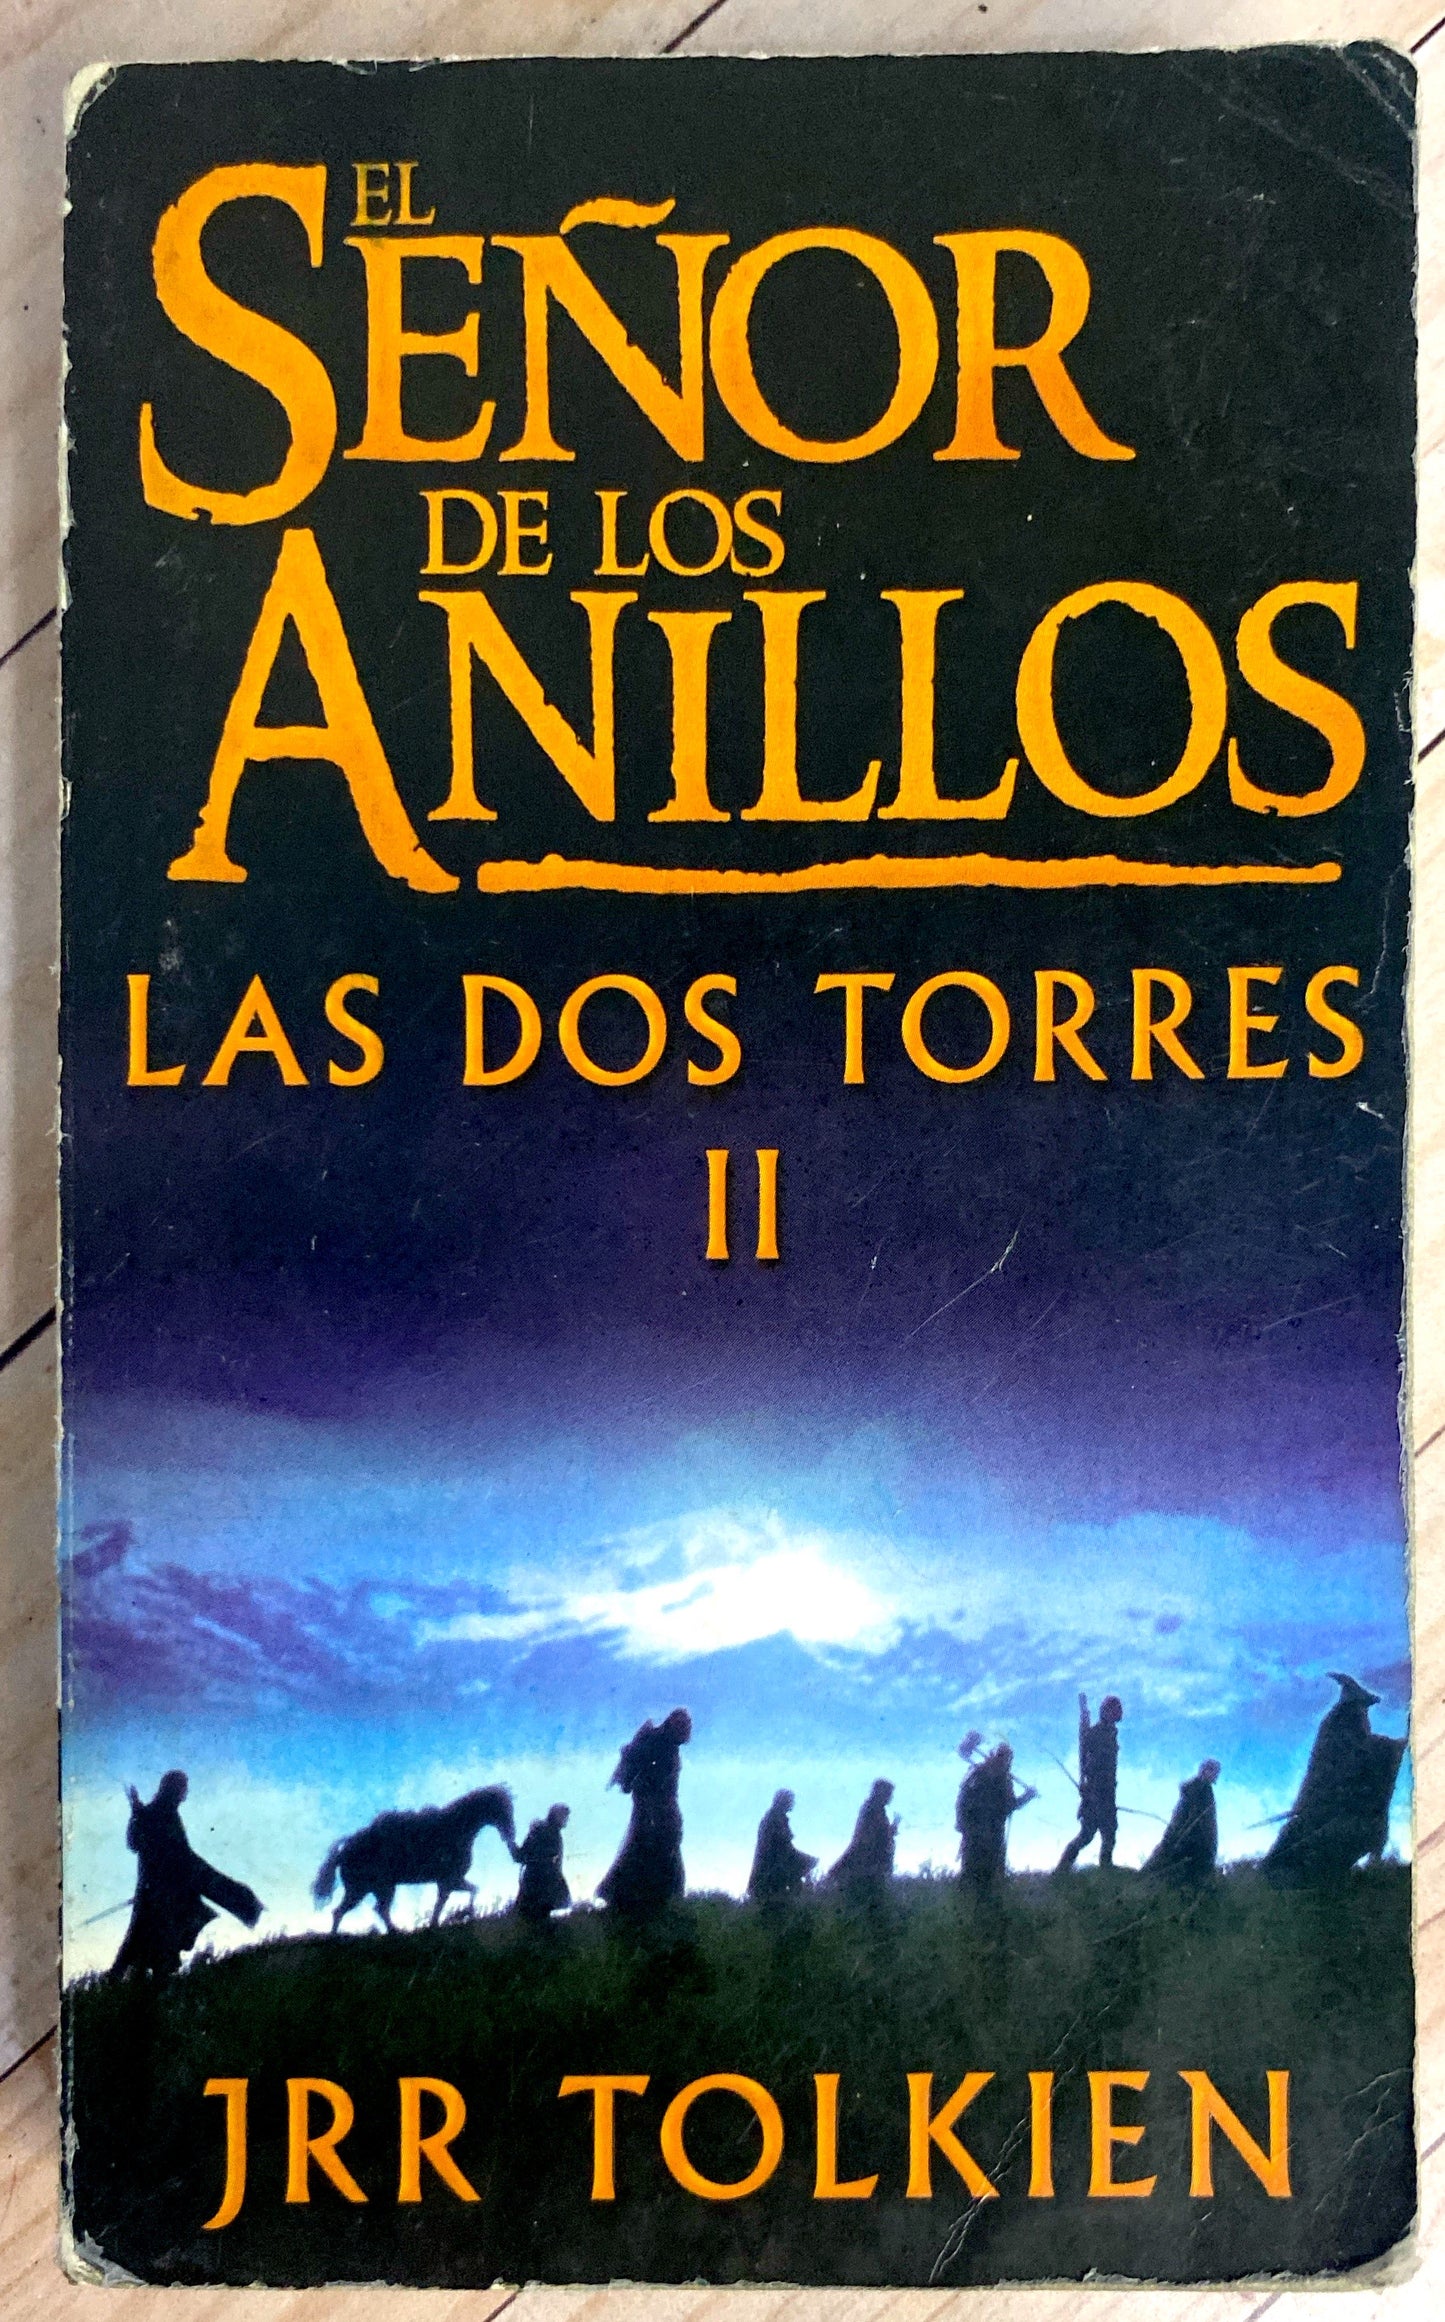 El señor de los anillos II : Las dos torres | J.R.R. Tolkien